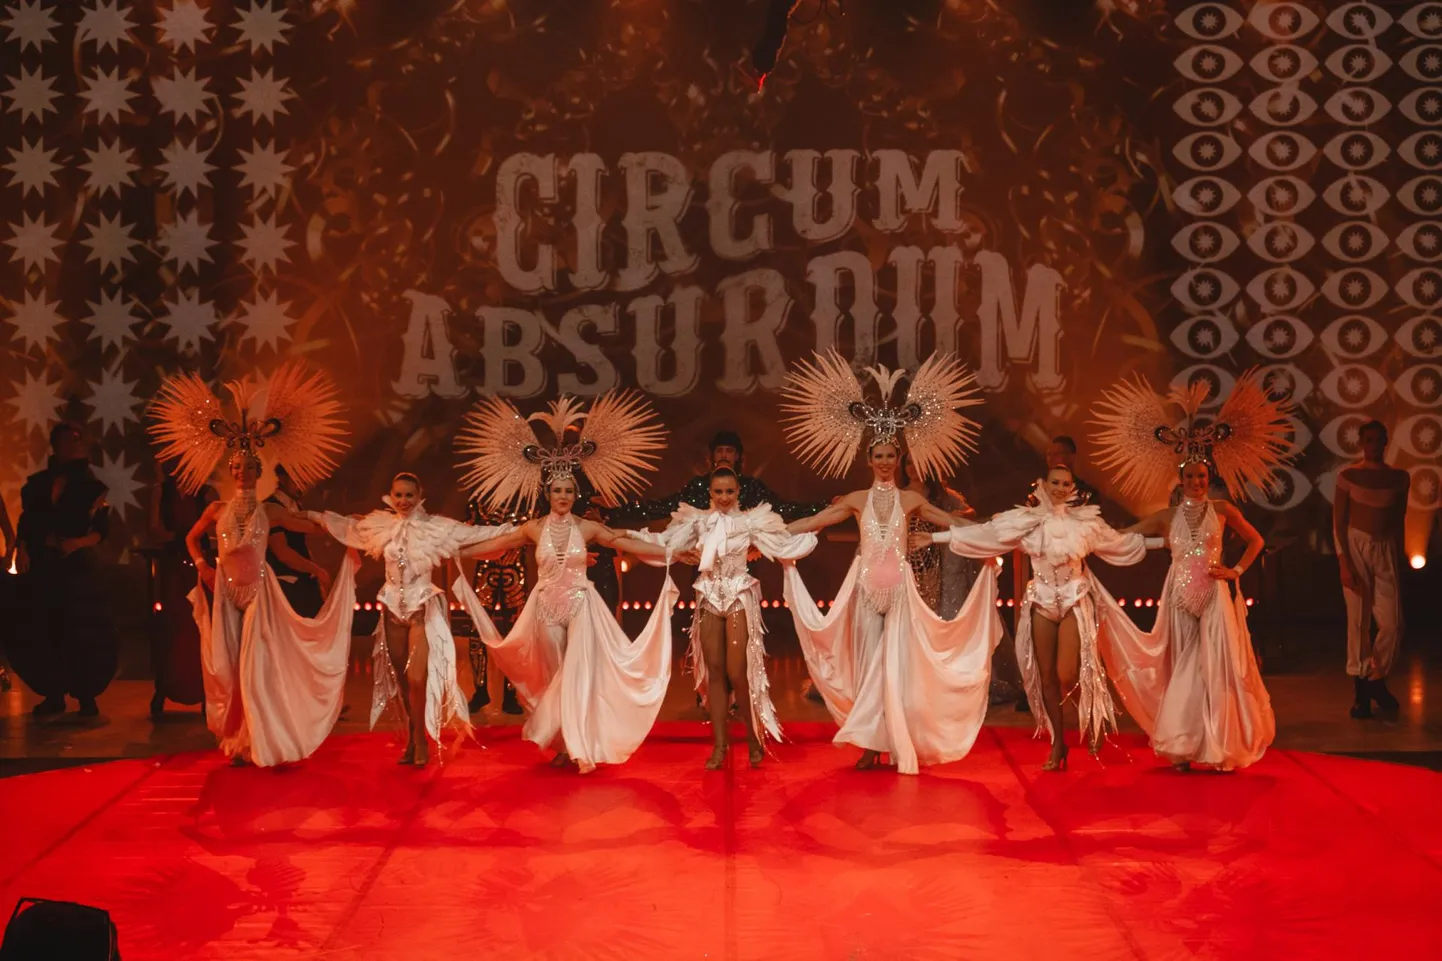 «Circum Absurdum»: Noblessneris Nobeli saali loodud kujundus viitab klassikalisele tsirkusetelgile. Atmosfäär eeldab lõbujanu.